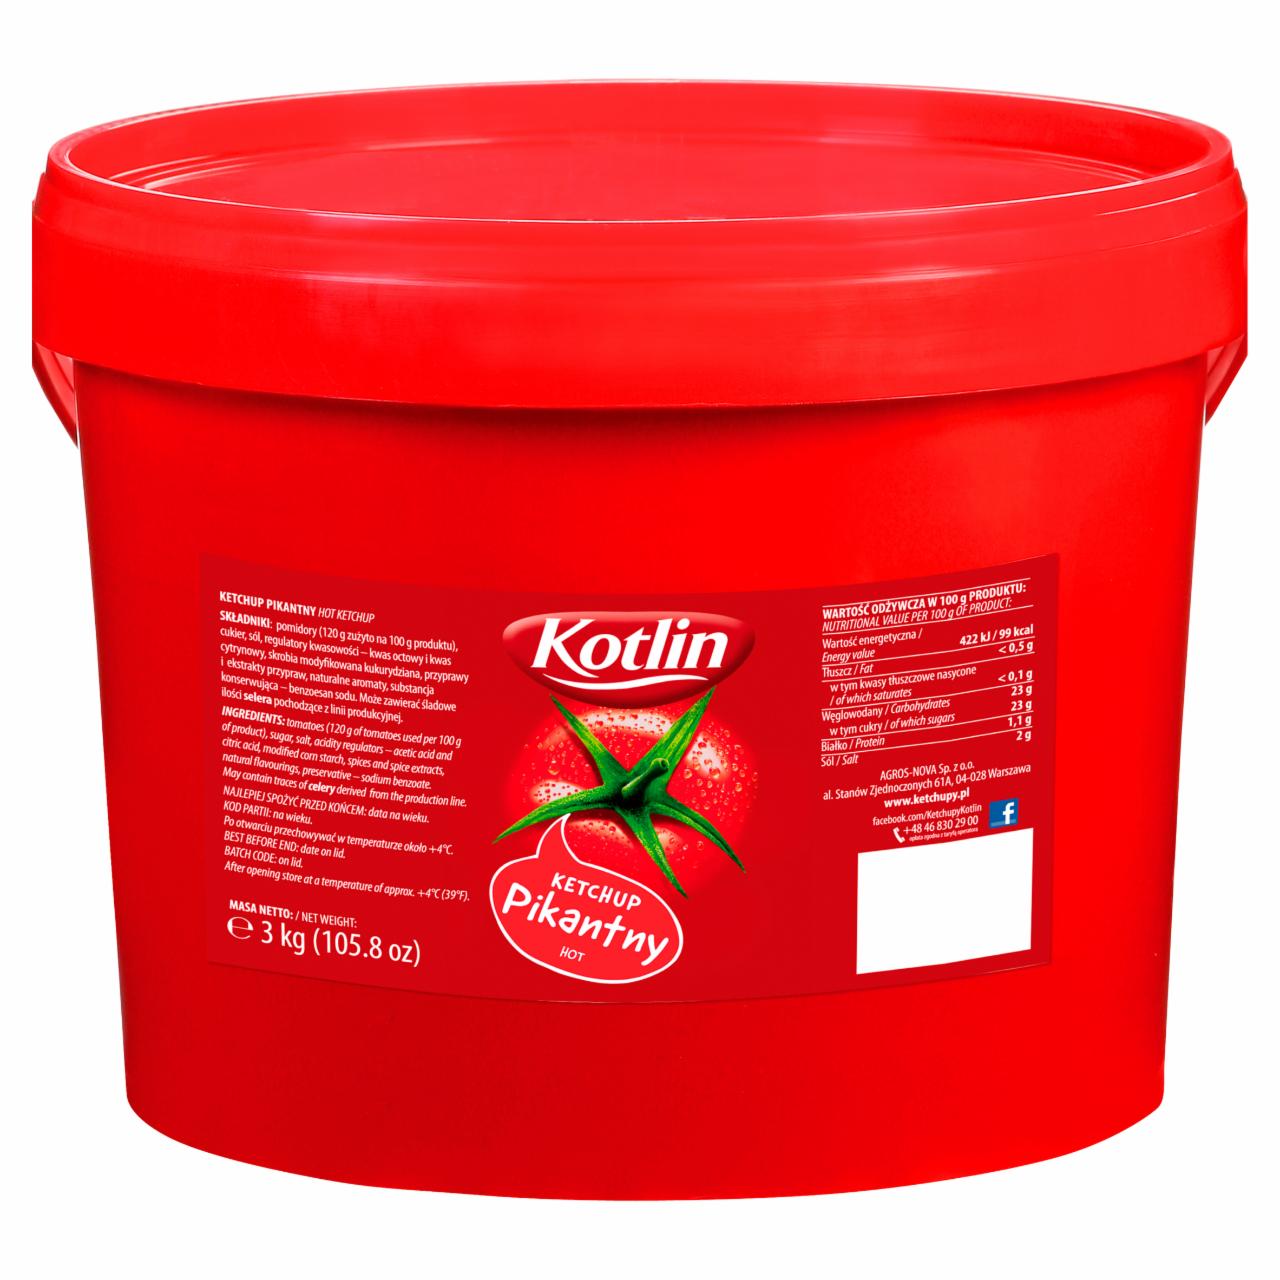 Zdjęcia - Kotlin Ketchup pikantny 3 kg